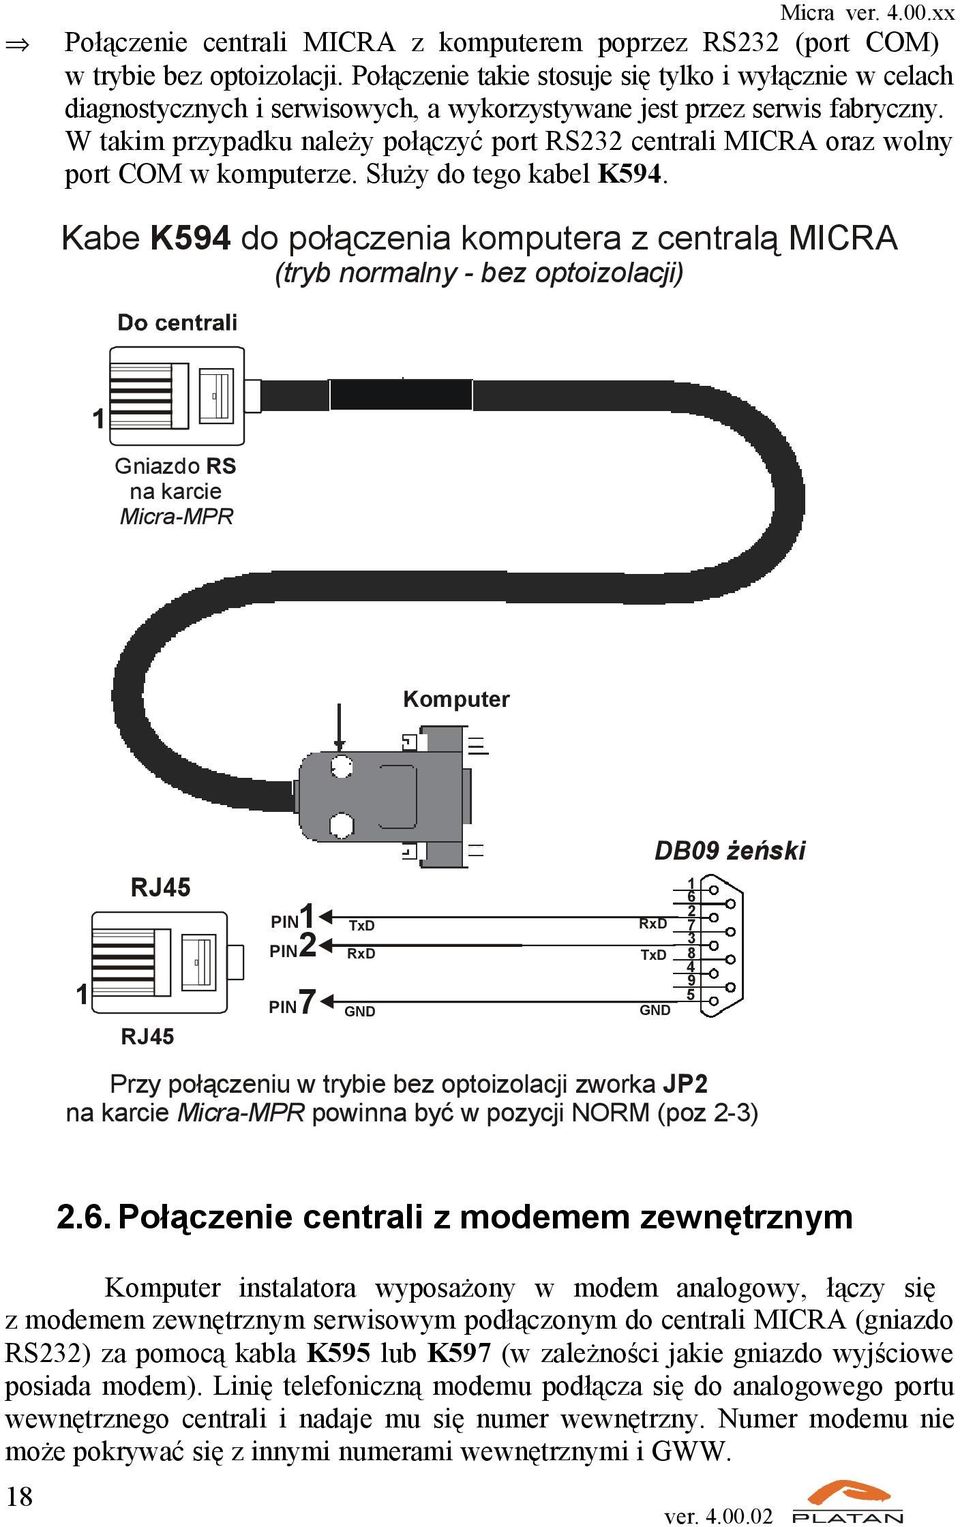 W takim przypadku należy połączyć port RS232 centrali MICRA oraz wolny port COM w komputerze. Służy do tego kabel K594.